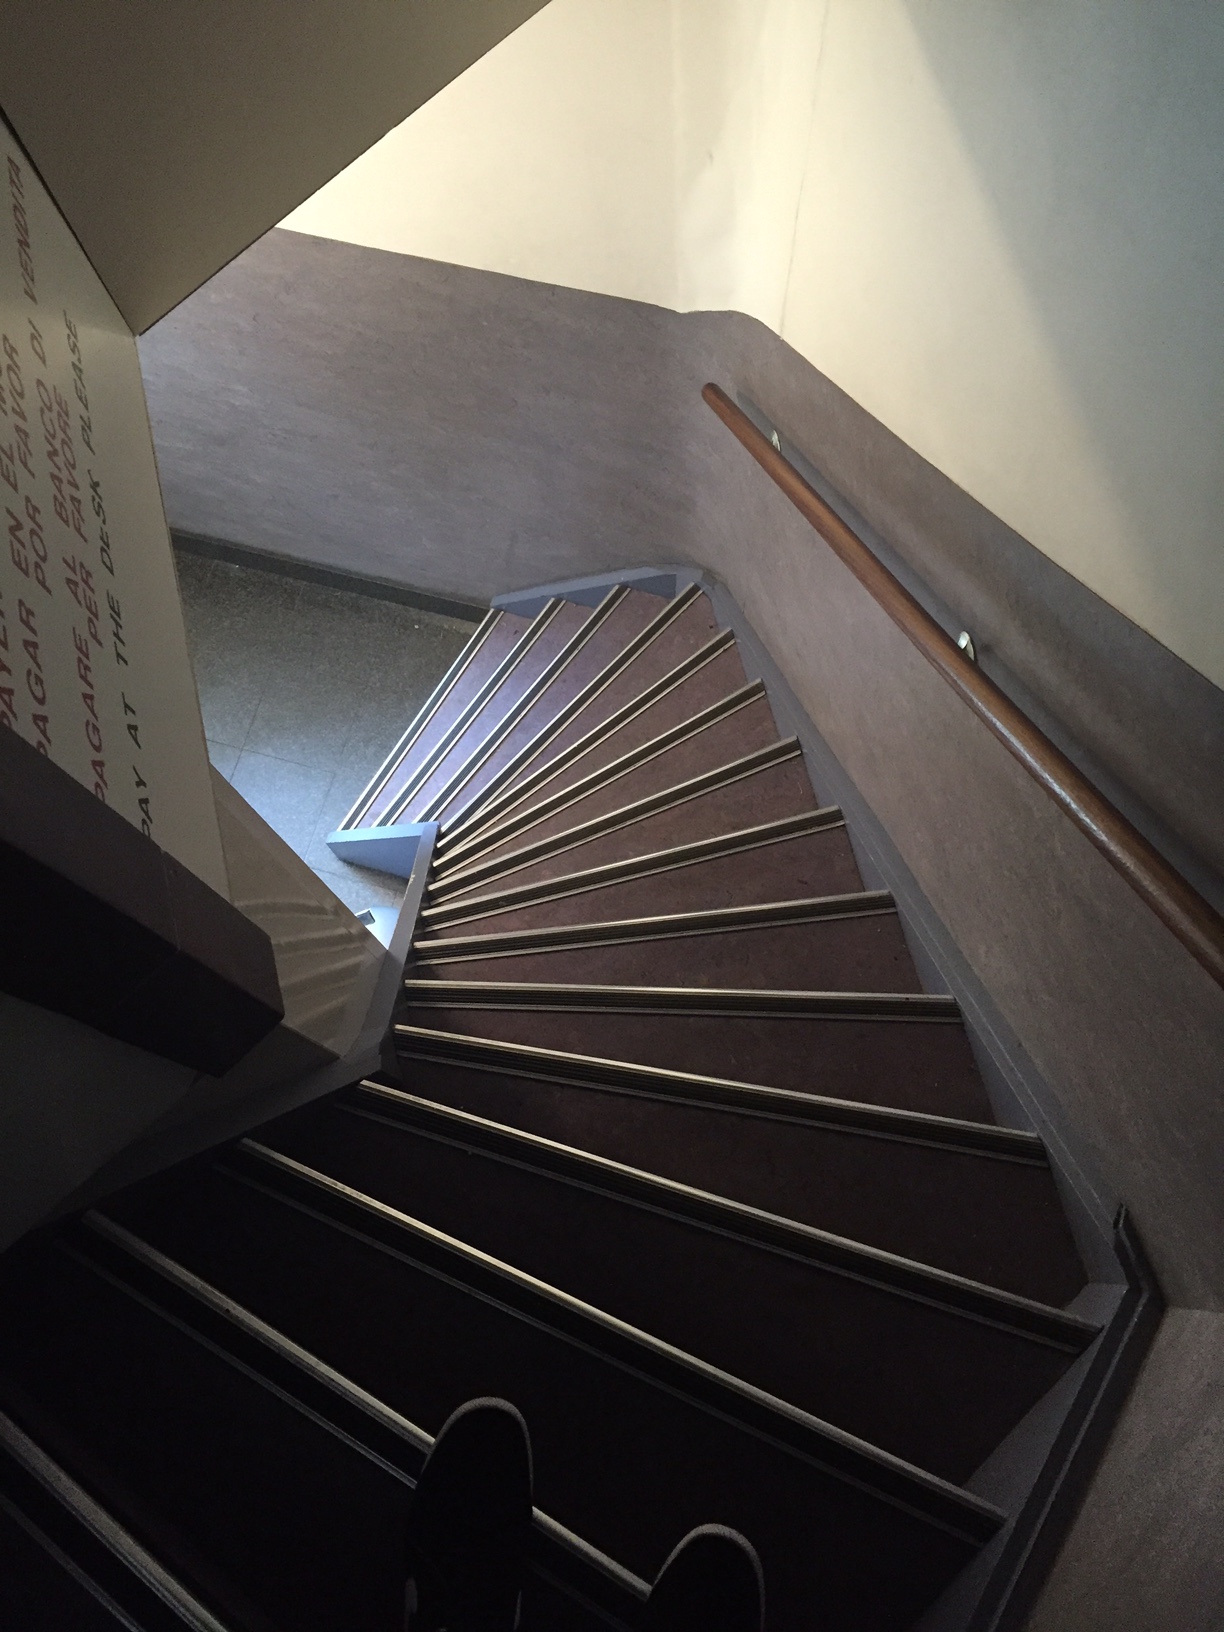 큐브하우스 내부 계단, 네덜란드 건물들의 계단은 조심해야 한다. 너무 좁아서 발을 잘못 디딜 수도 있다.